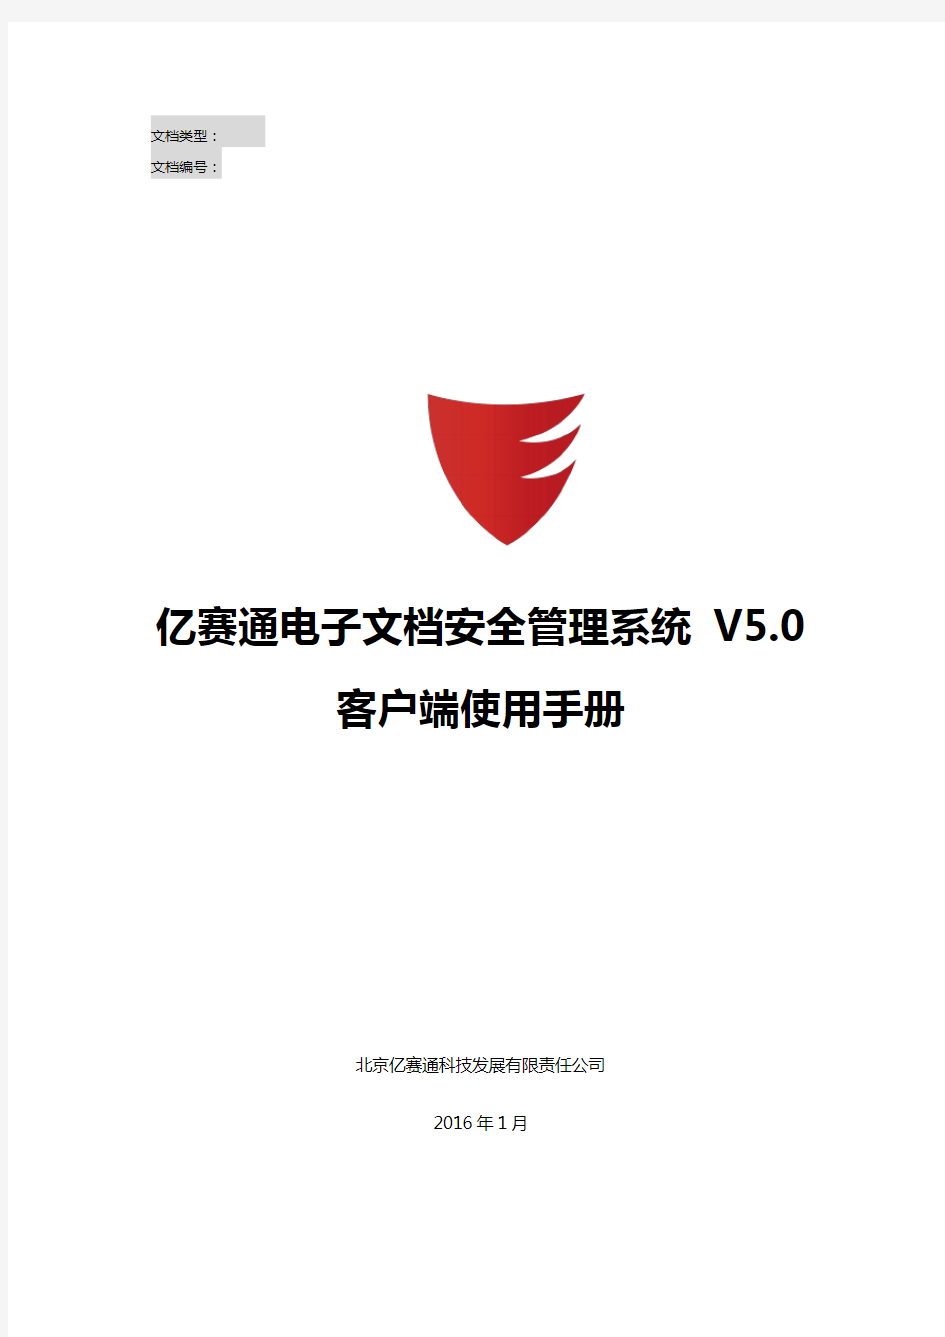 亿赛通电子文档安全管理系统V5.0--客户端使用手册V11